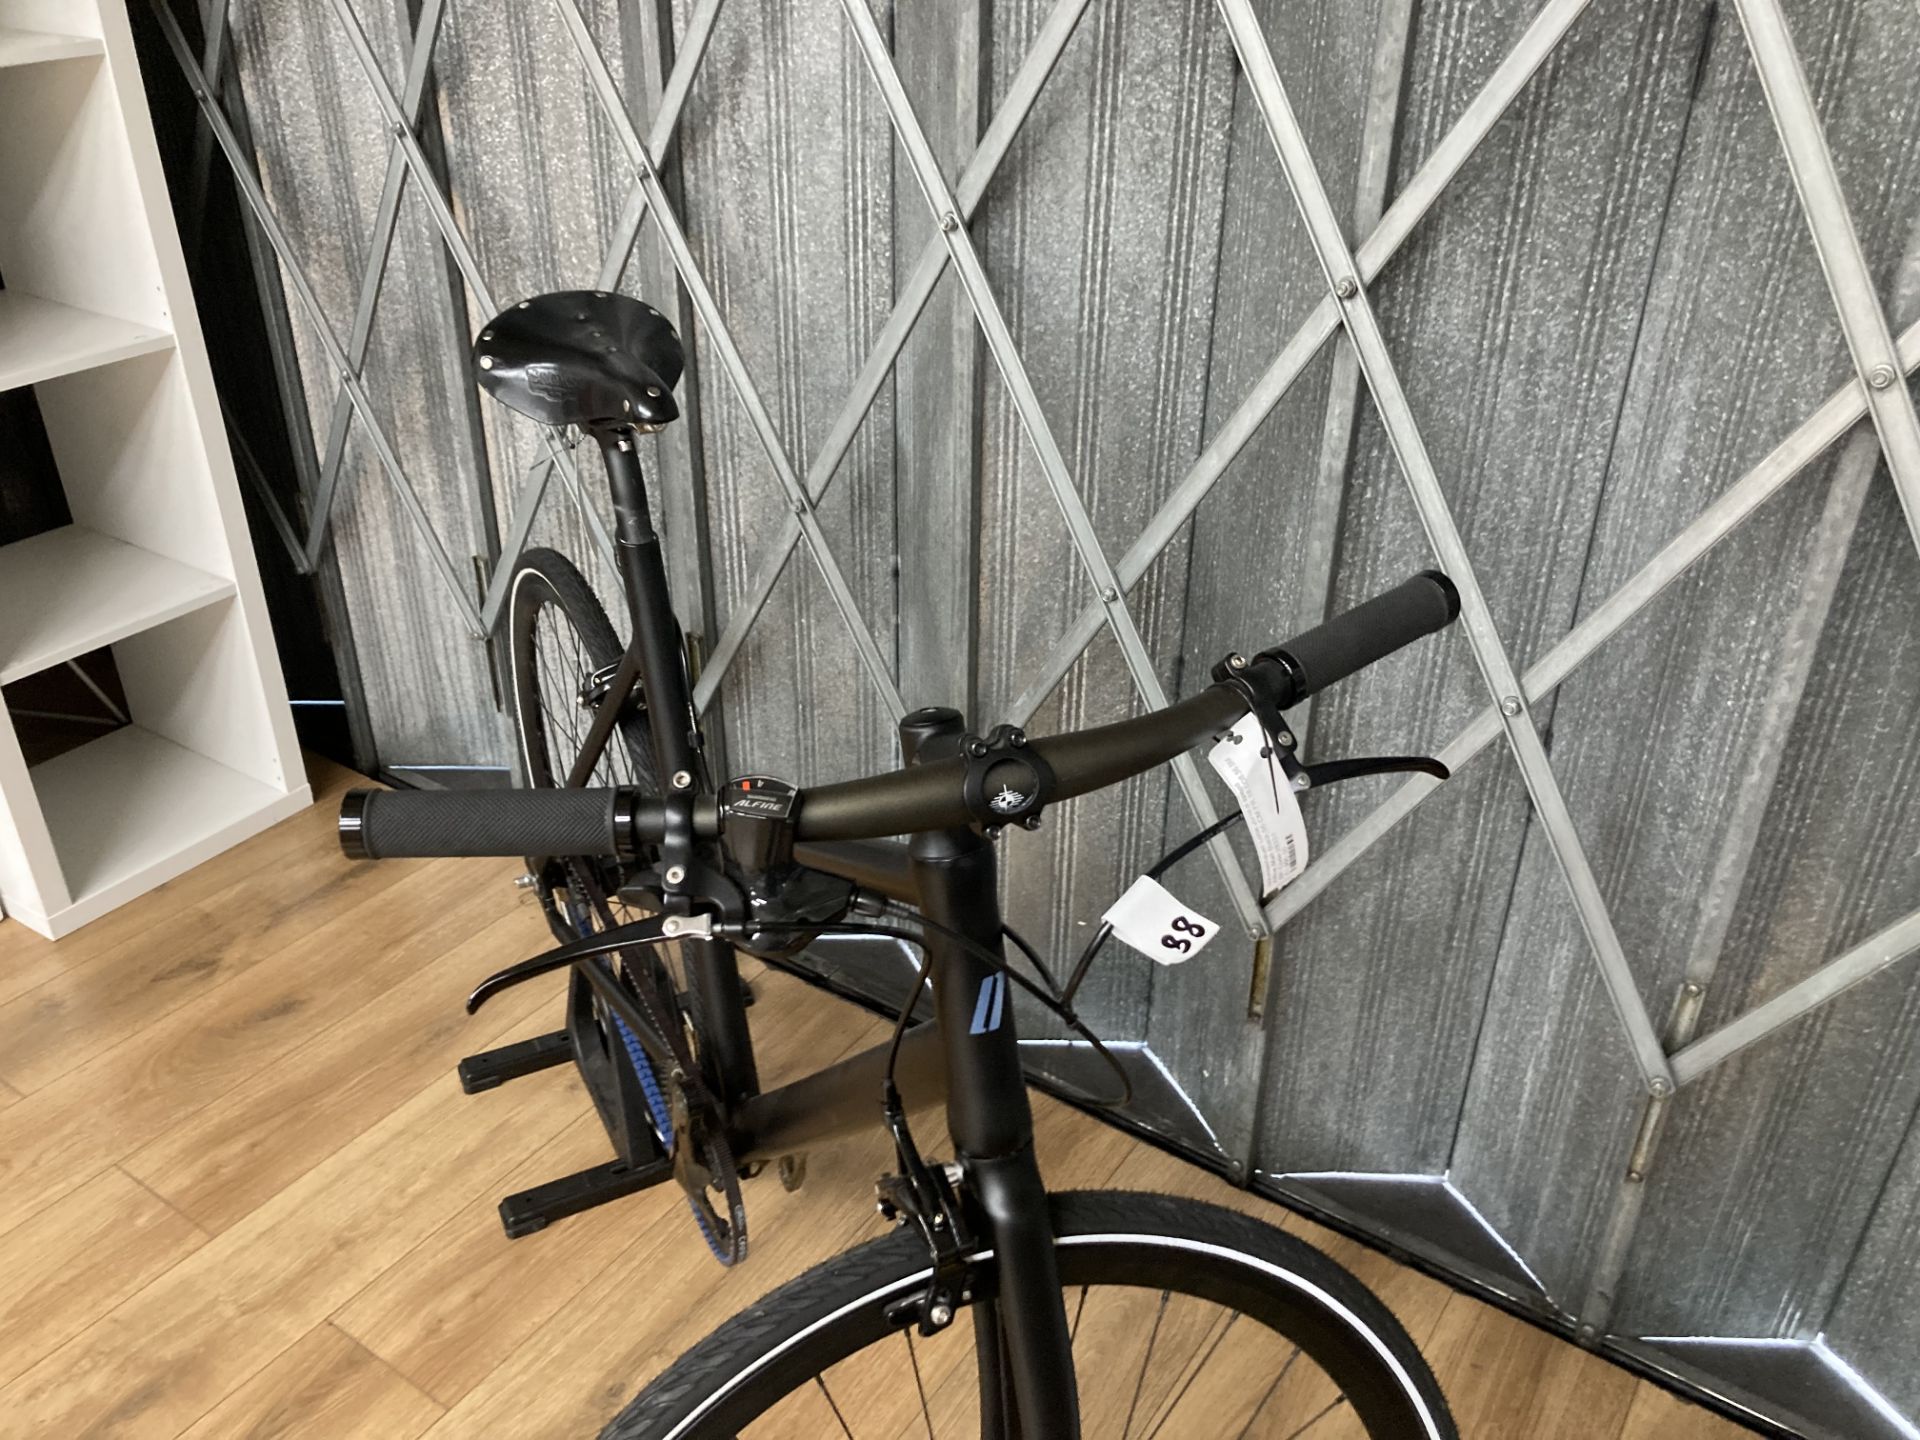 Schindelhauer Lotte 56 CM, Matt Black, 8 speed Alfine, 2018 No pedals - Image 4 of 4